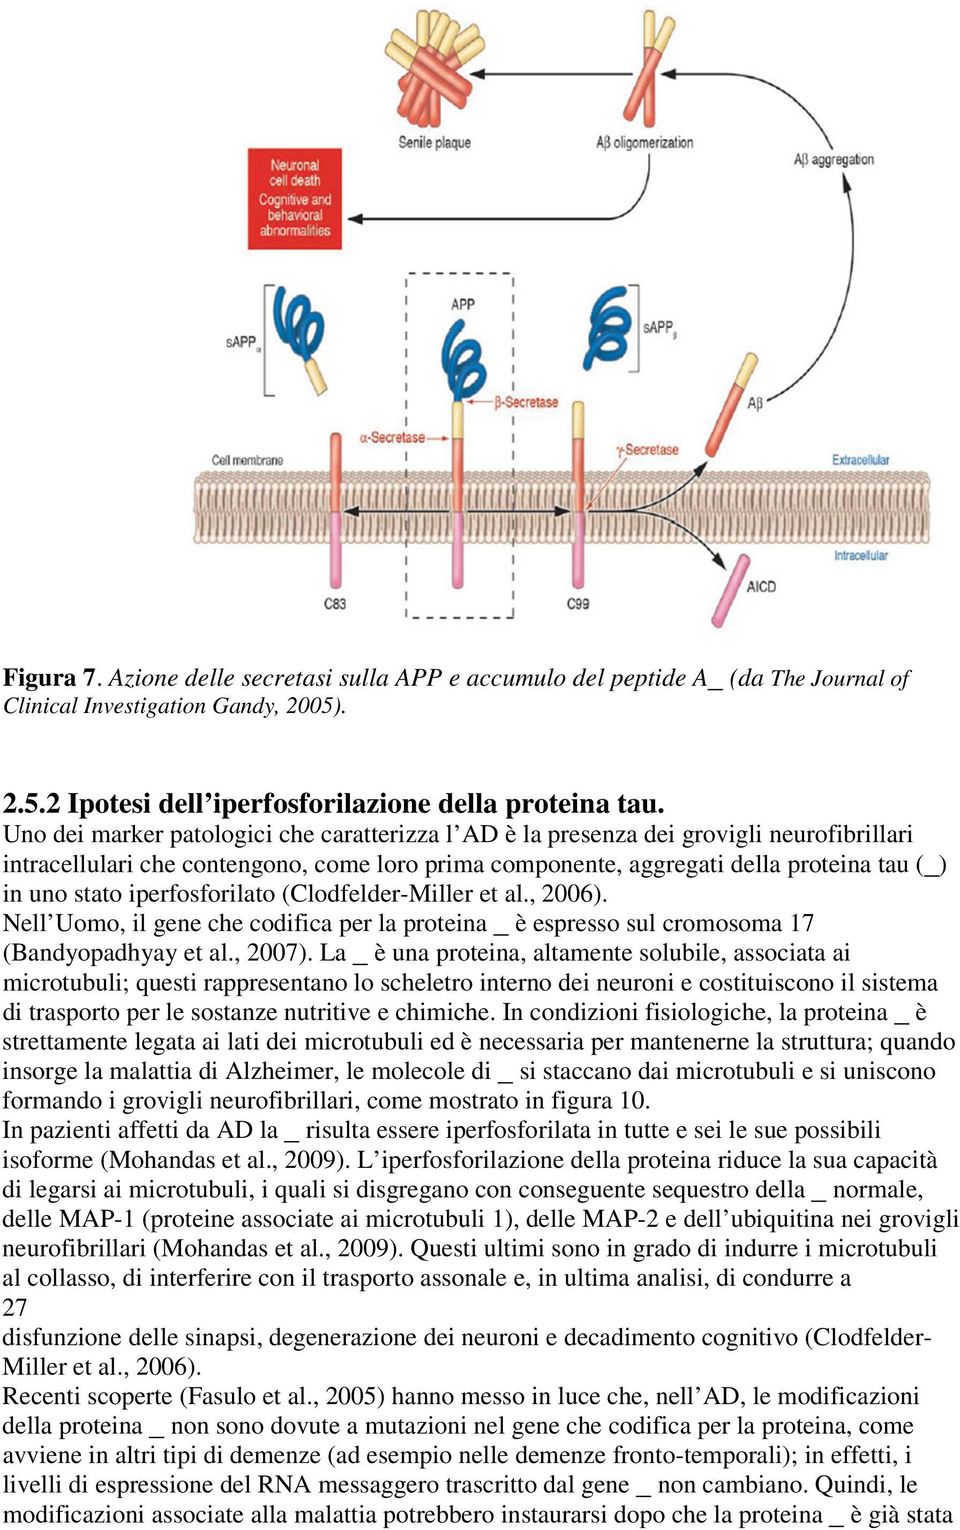 iperfosforilato (Clodfelder-Miller et al., 2006). Nell Uomo, il gene che codifica per la proteina _ è espresso sul cromosoma 17 (Bandyopadhyay et al., 2007).